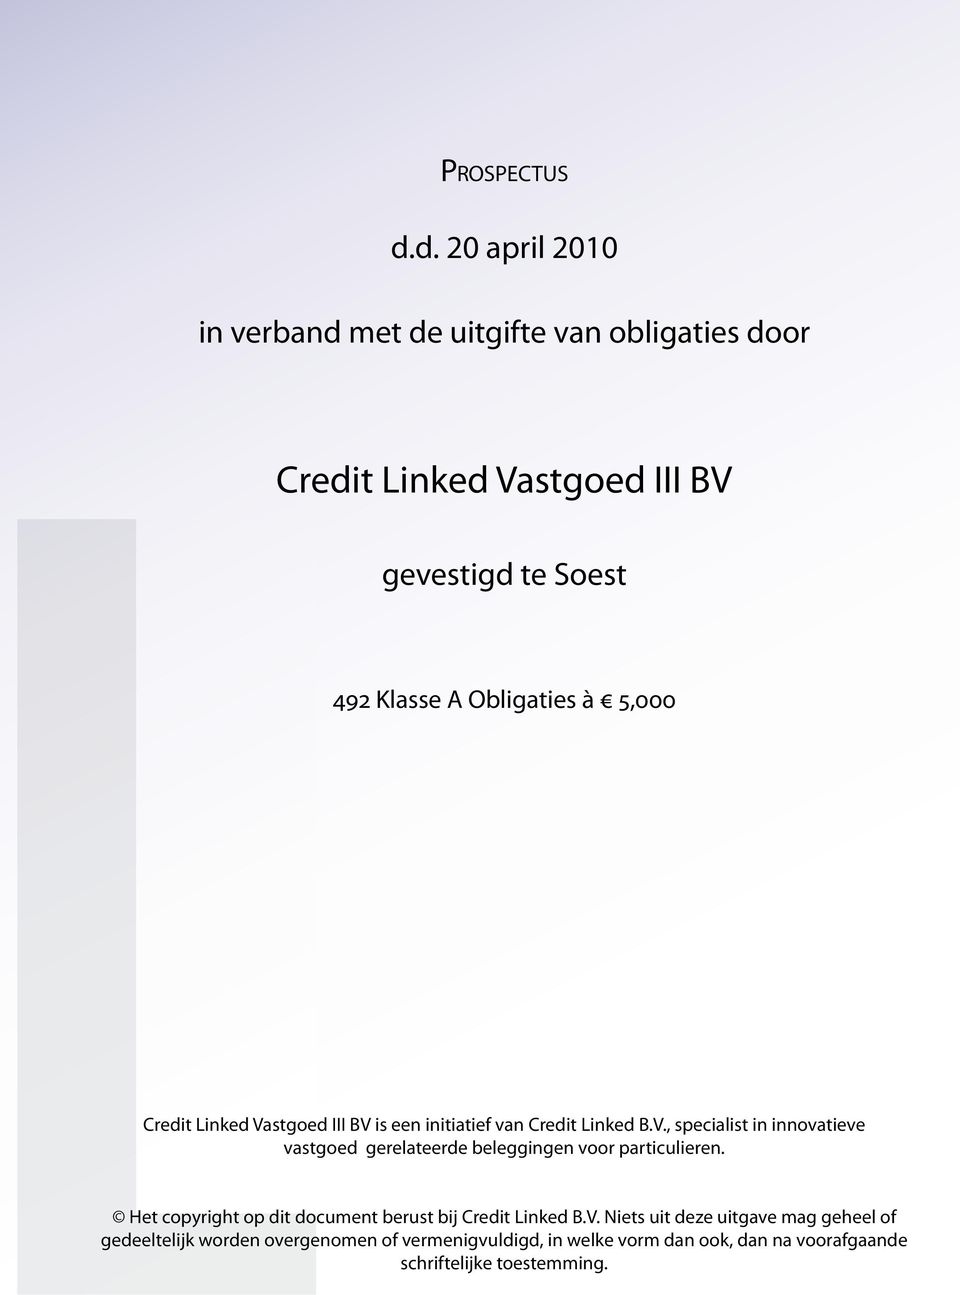 Obligaties à 5,000 Credit Linked Vastgoed III BV is een initiatief van Credit Linked B.V., specialist in innovatieve vastgoed gerelateerde beleggingen voor particulieren.